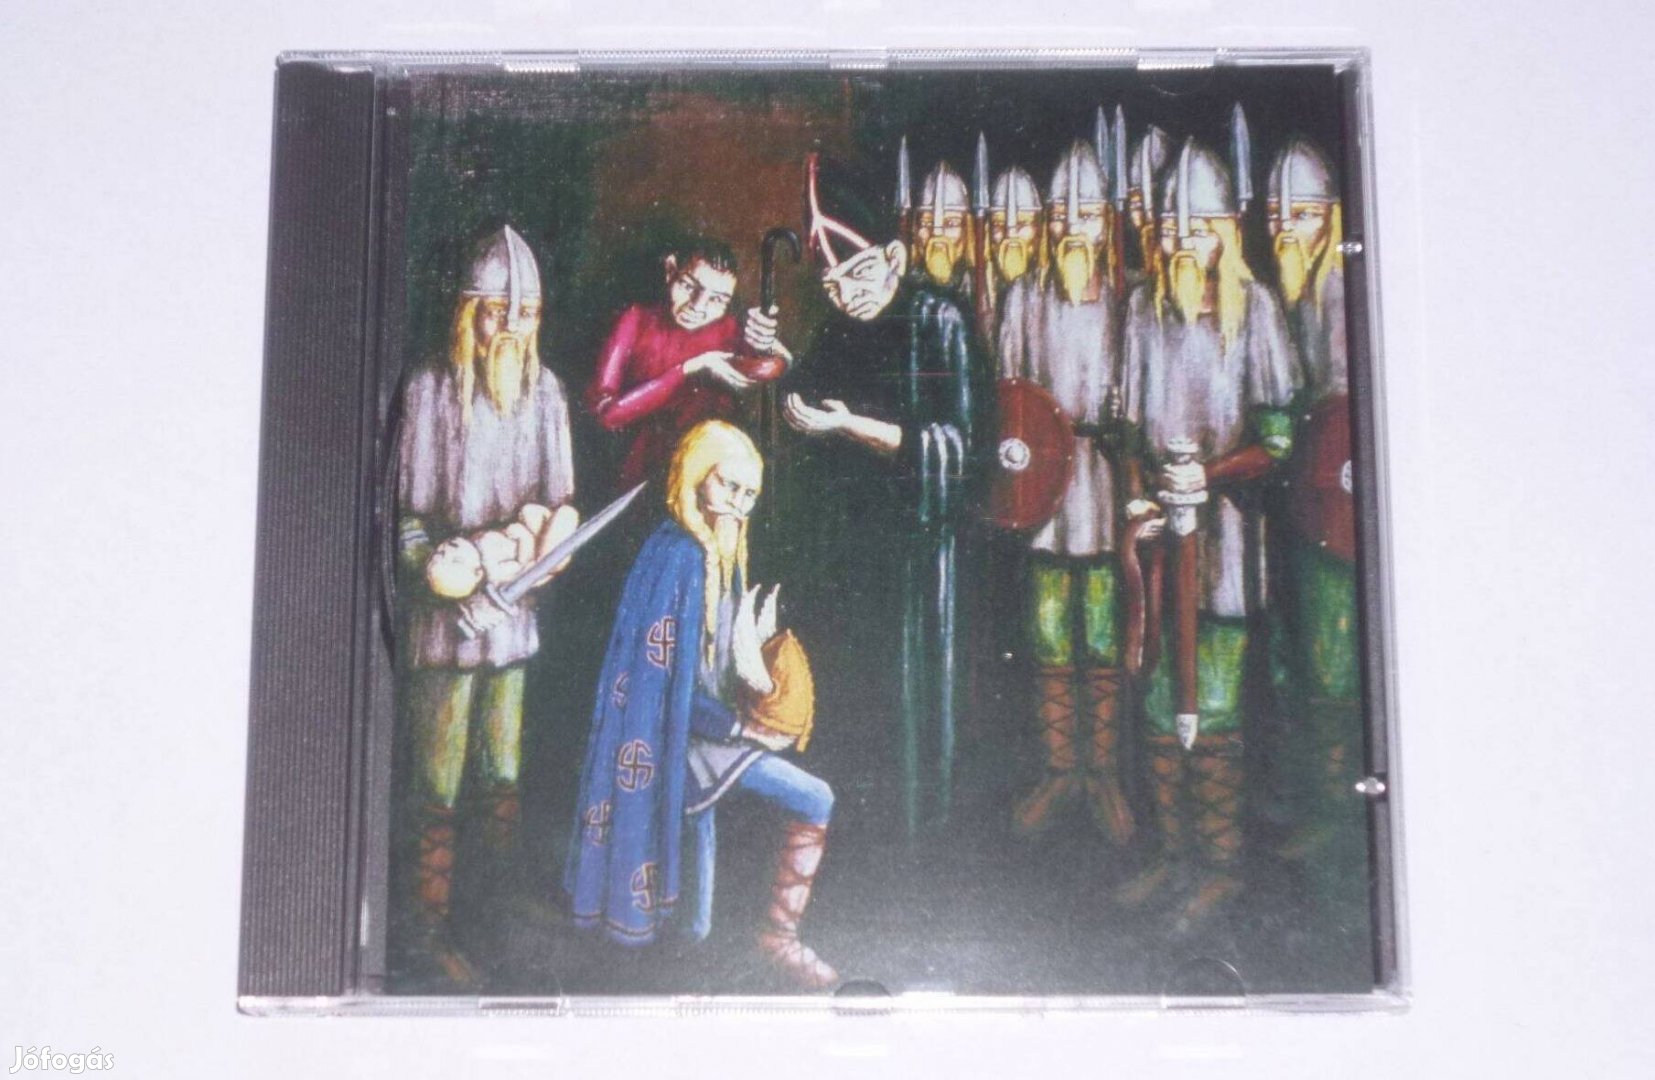 Burzum - Daui Baldrs CD